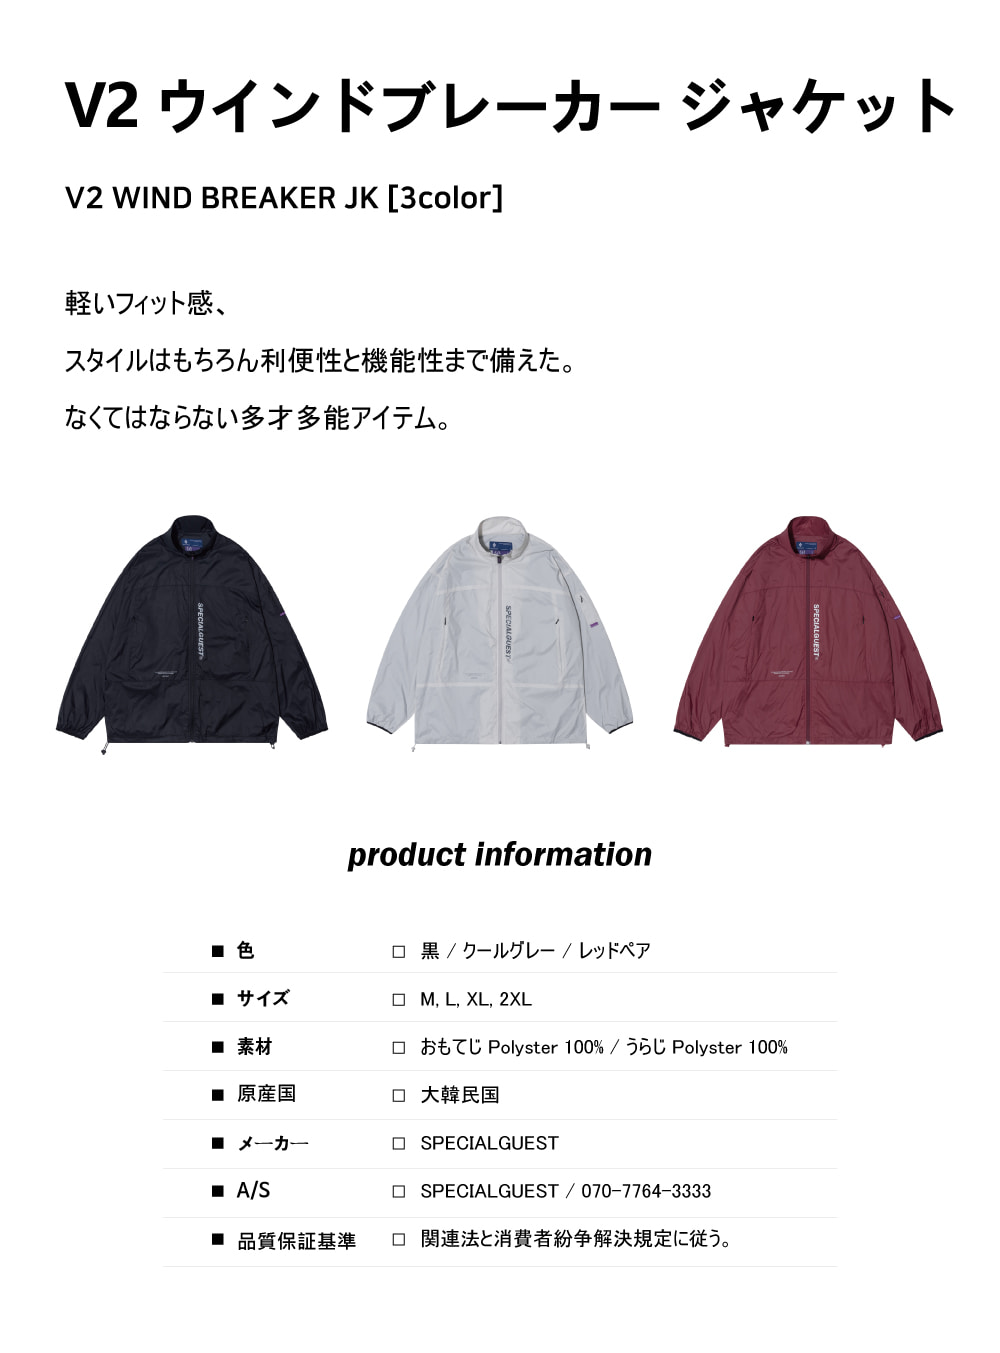 V2 Wind Breaker JK RED PEAR - Lavendervera SB